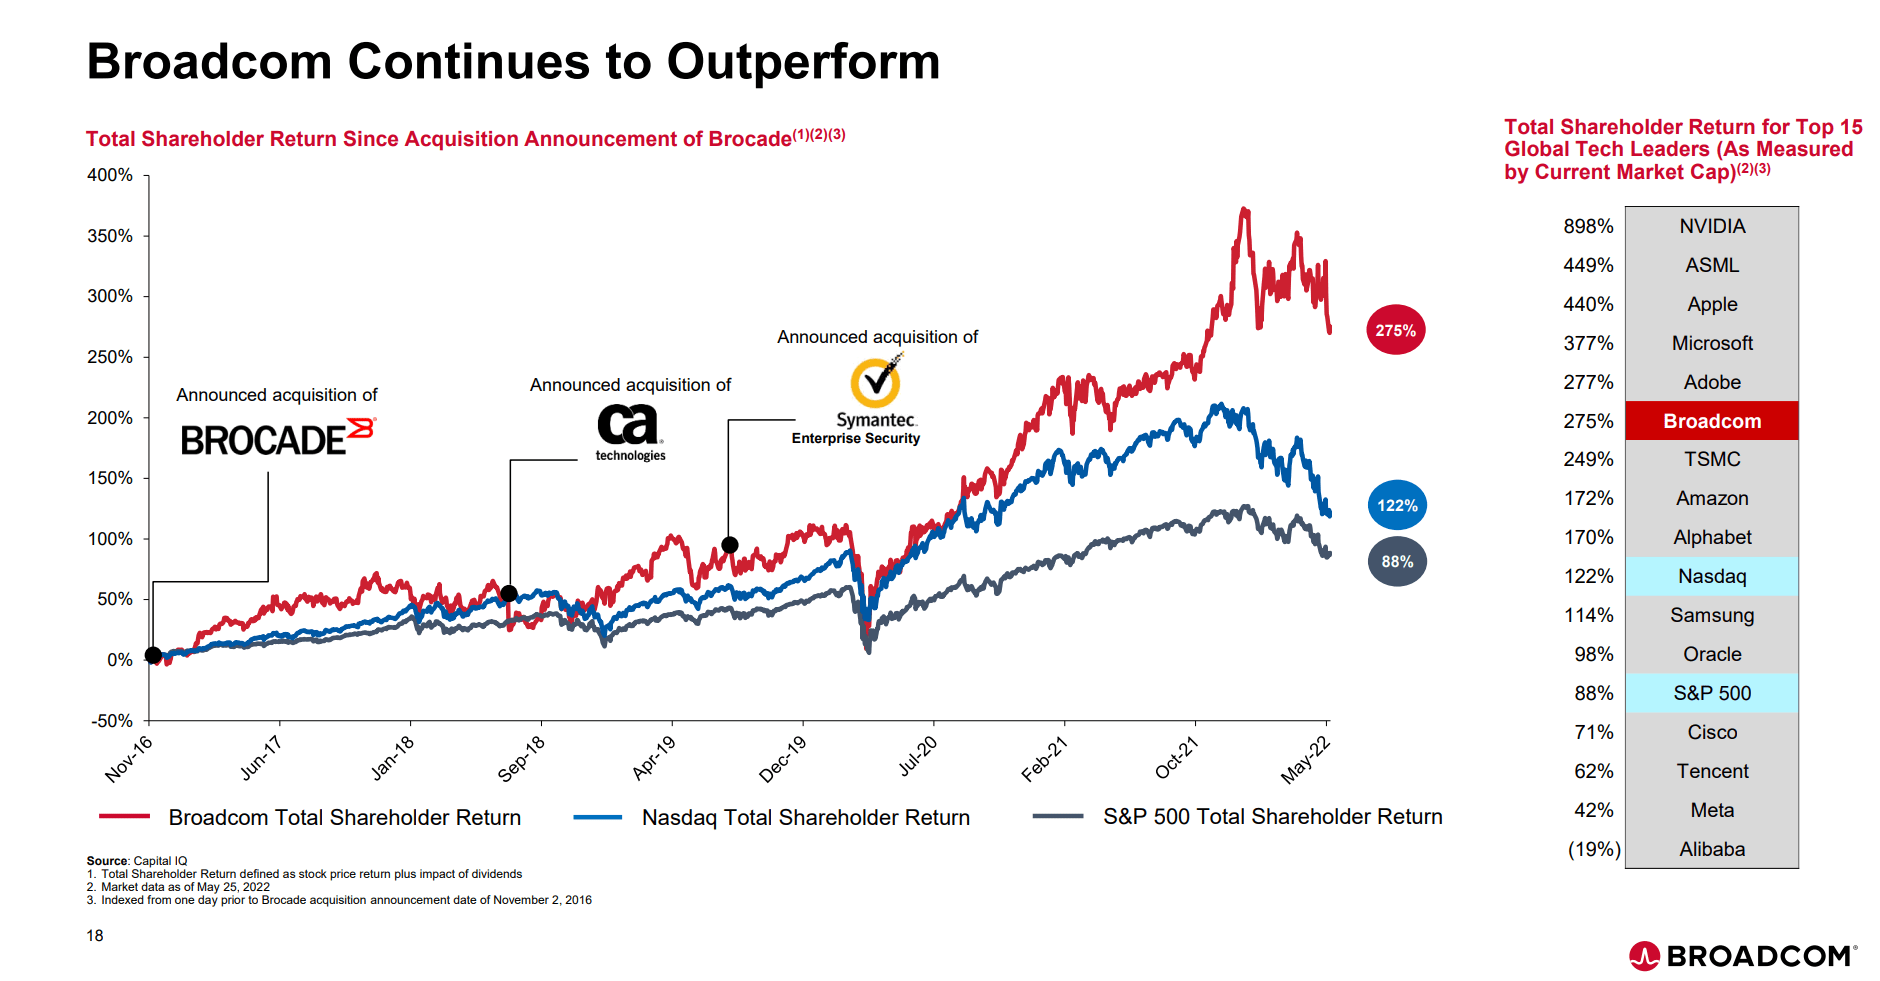 AVGO has outperformed long-term